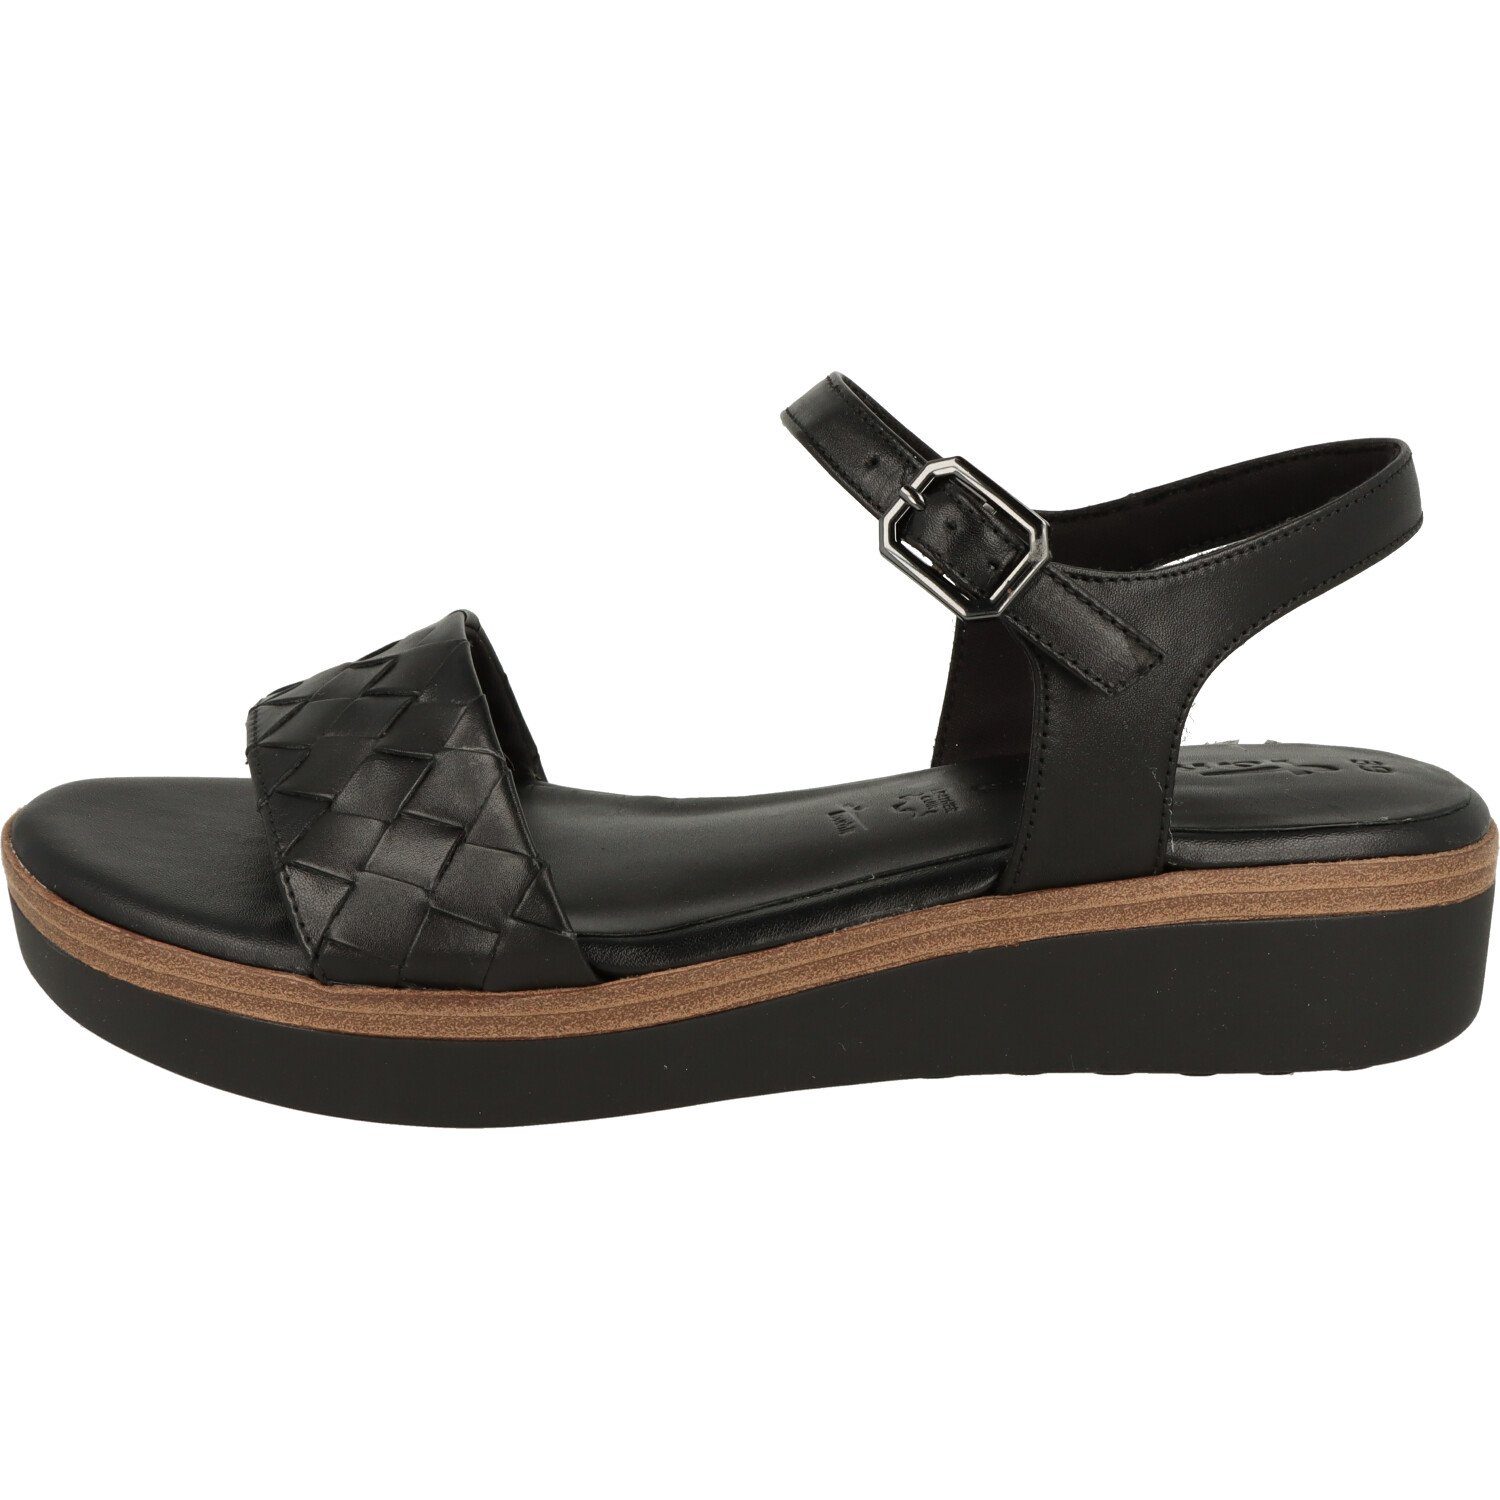 Tamaris Damen Schuhe Black Riemchen Sandalette Leder Komfort 1-28216-20 Sandalette